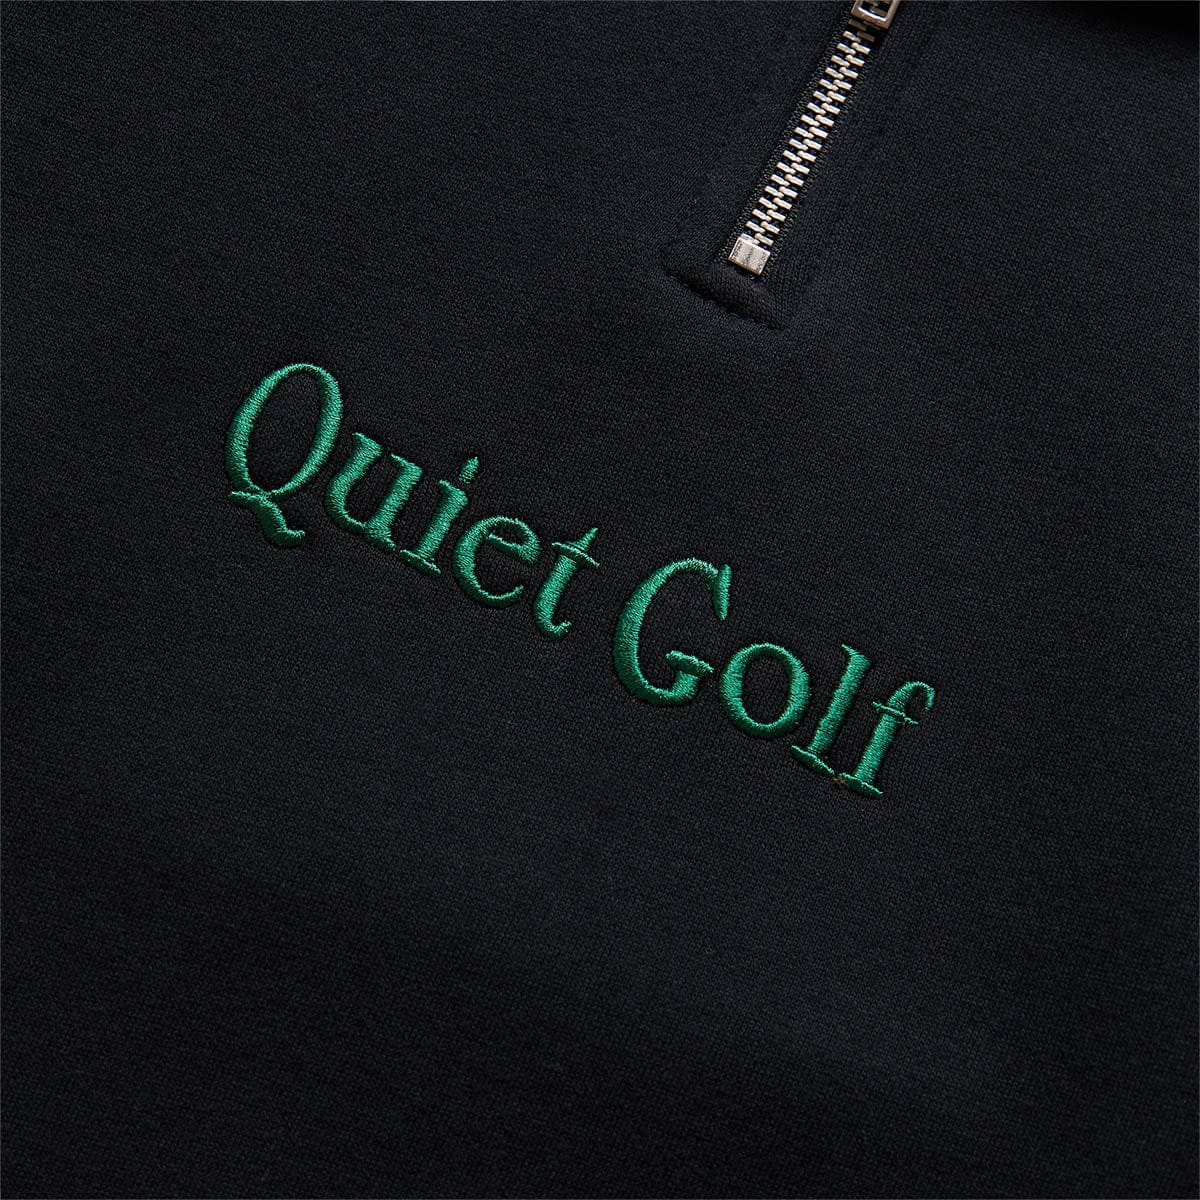 Quiet Golf Hoodies & Sweatshirts CLASSIC HALF ZIP